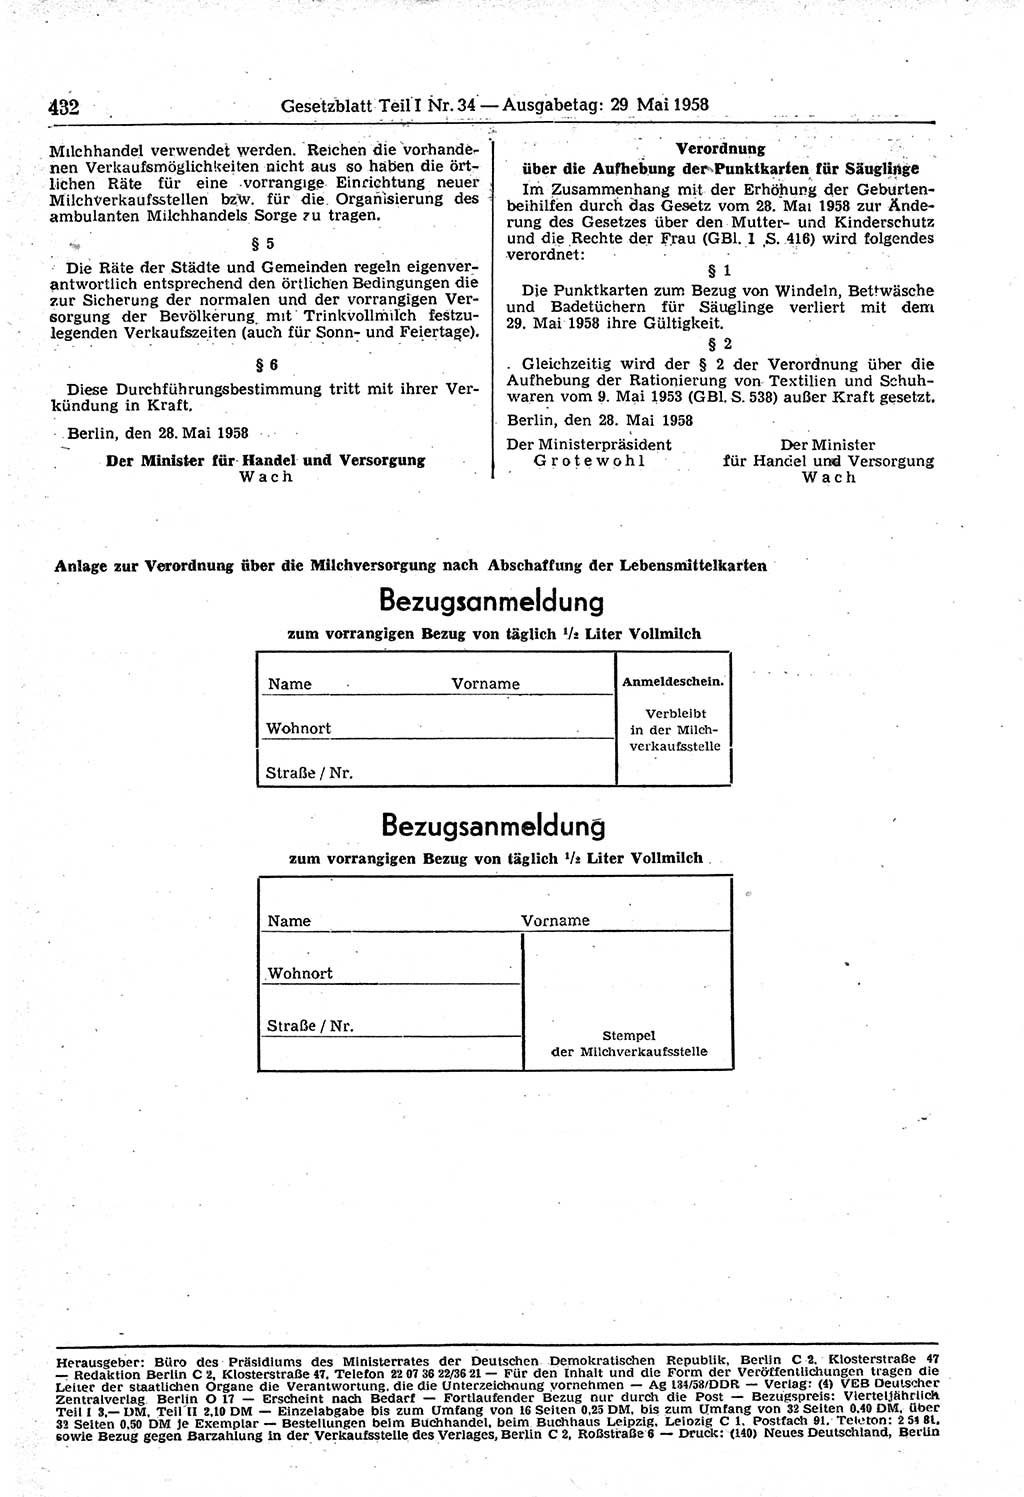 Gesetzblatt (GBl.) der Deutschen Demokratischen Republik (DDR) Teil Ⅰ 1958, Seite 432 (GBl. DDR Ⅰ 1958, S. 432)